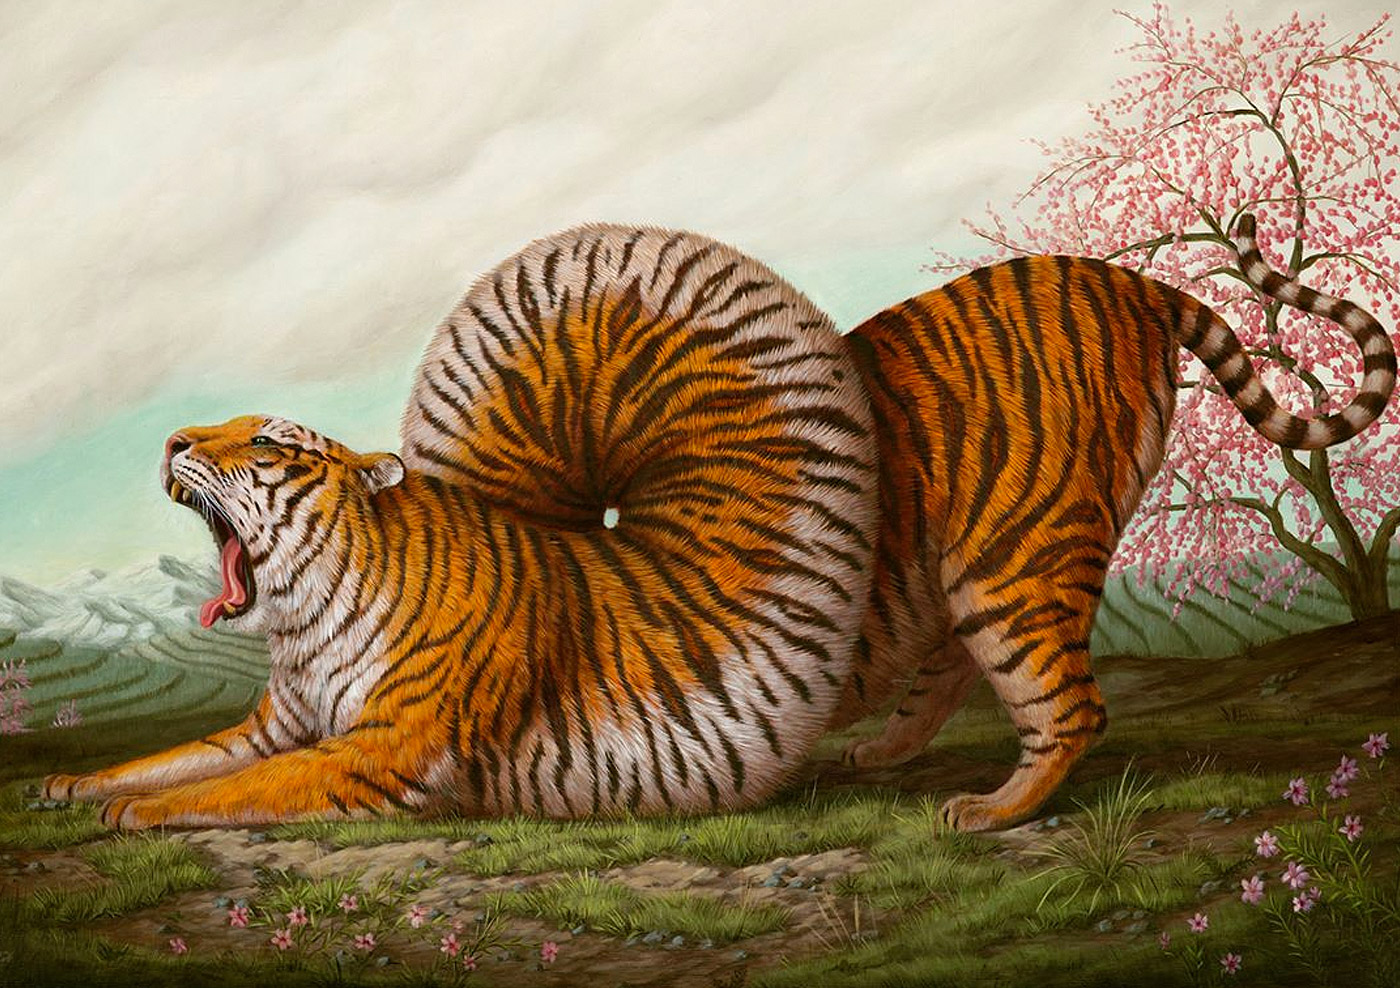 Surreal & Bizarre Animal Paintings by Bruno Pontiroli | Daily ...